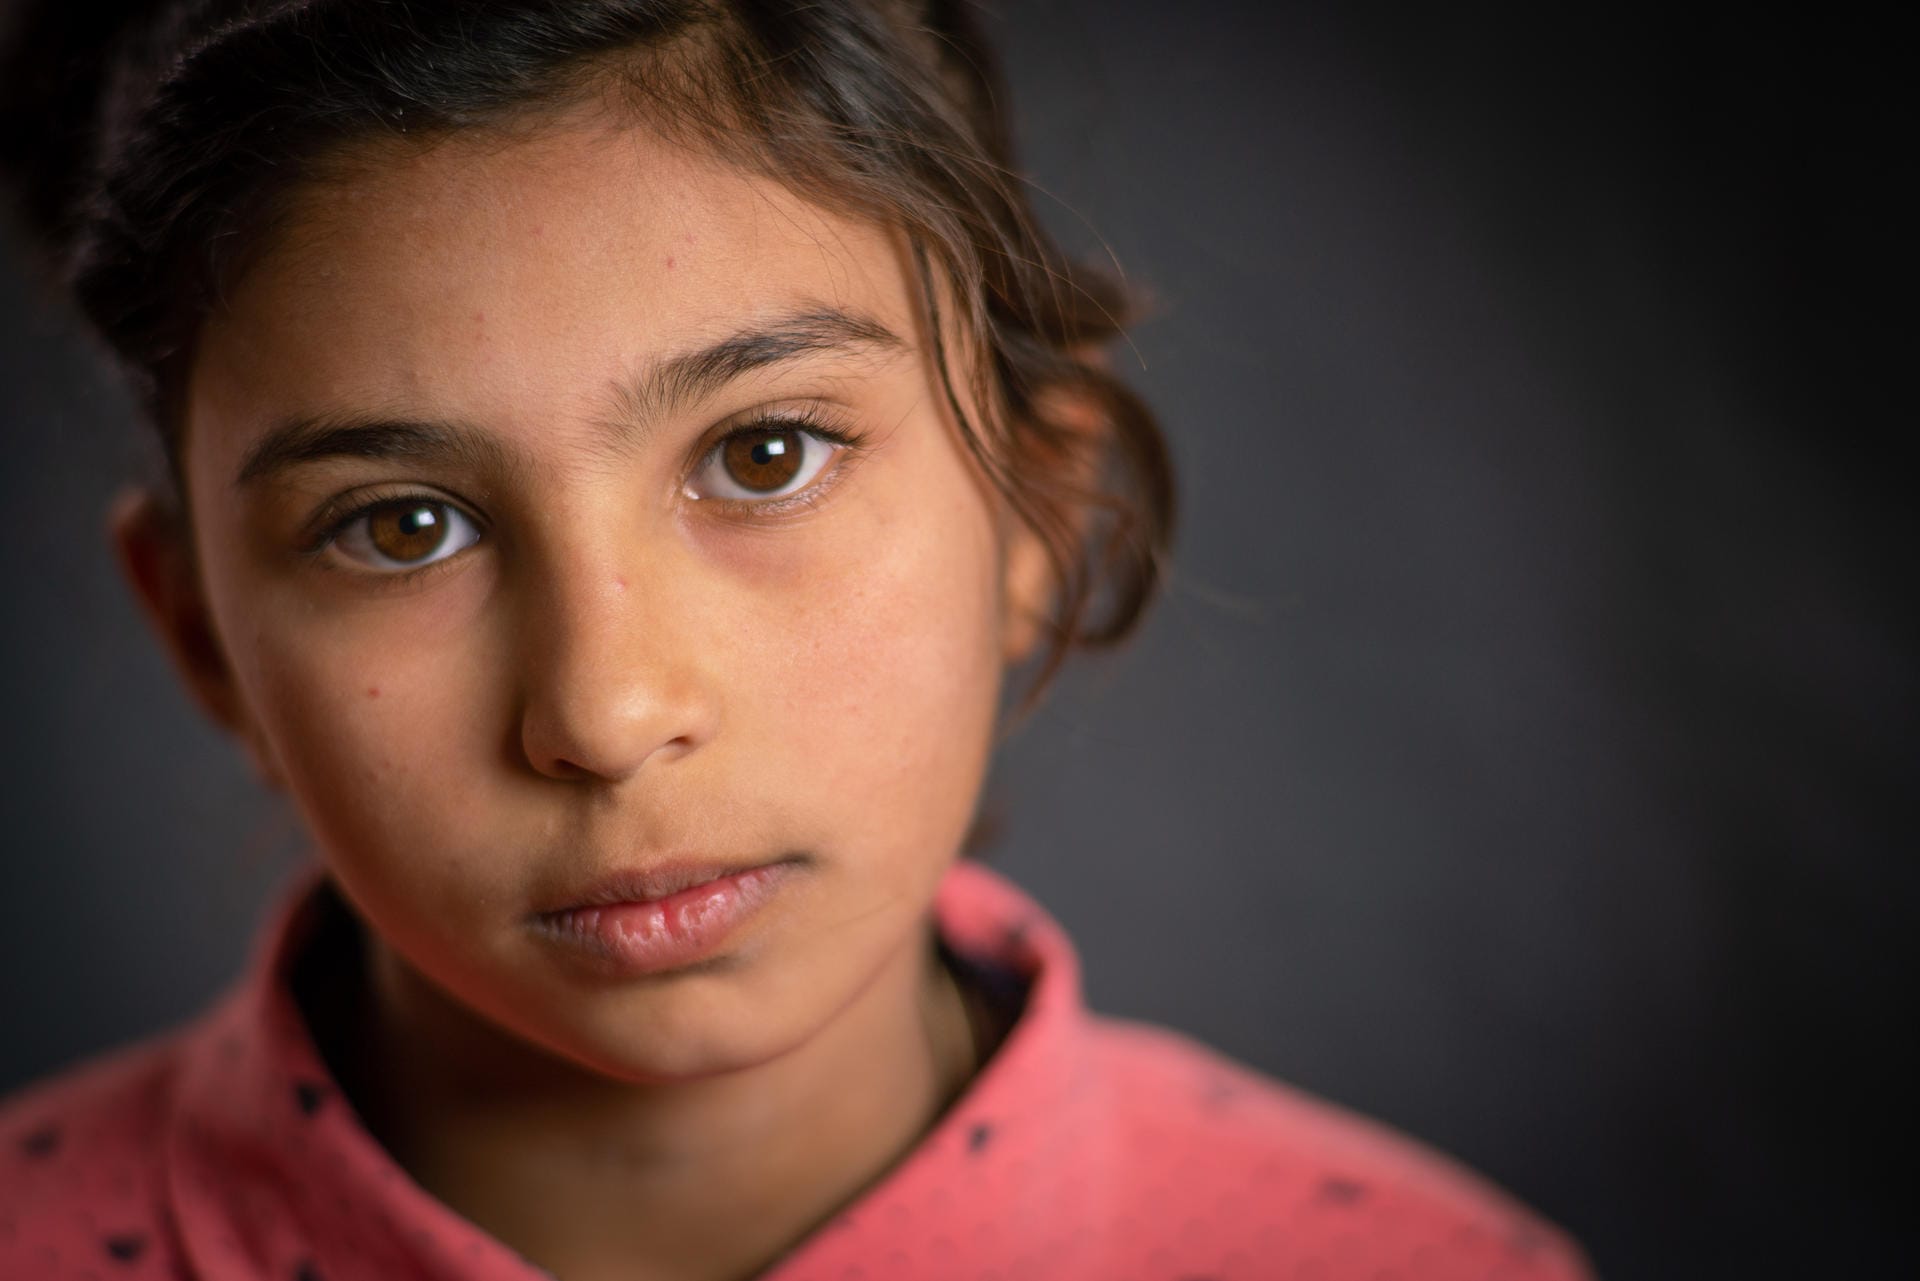 Hala ist 11 Jahre alt, sie konnte wegen des Syrien-Konflikts zwei Jahre nicht zur Schule gehen. "Alles, an was ich mich erinnere, ist der Krieg", sagt Hala zu Unicef. "Ich hatte solche Angst, früher fielen regelmäßig Bomben um unser Haus herum."